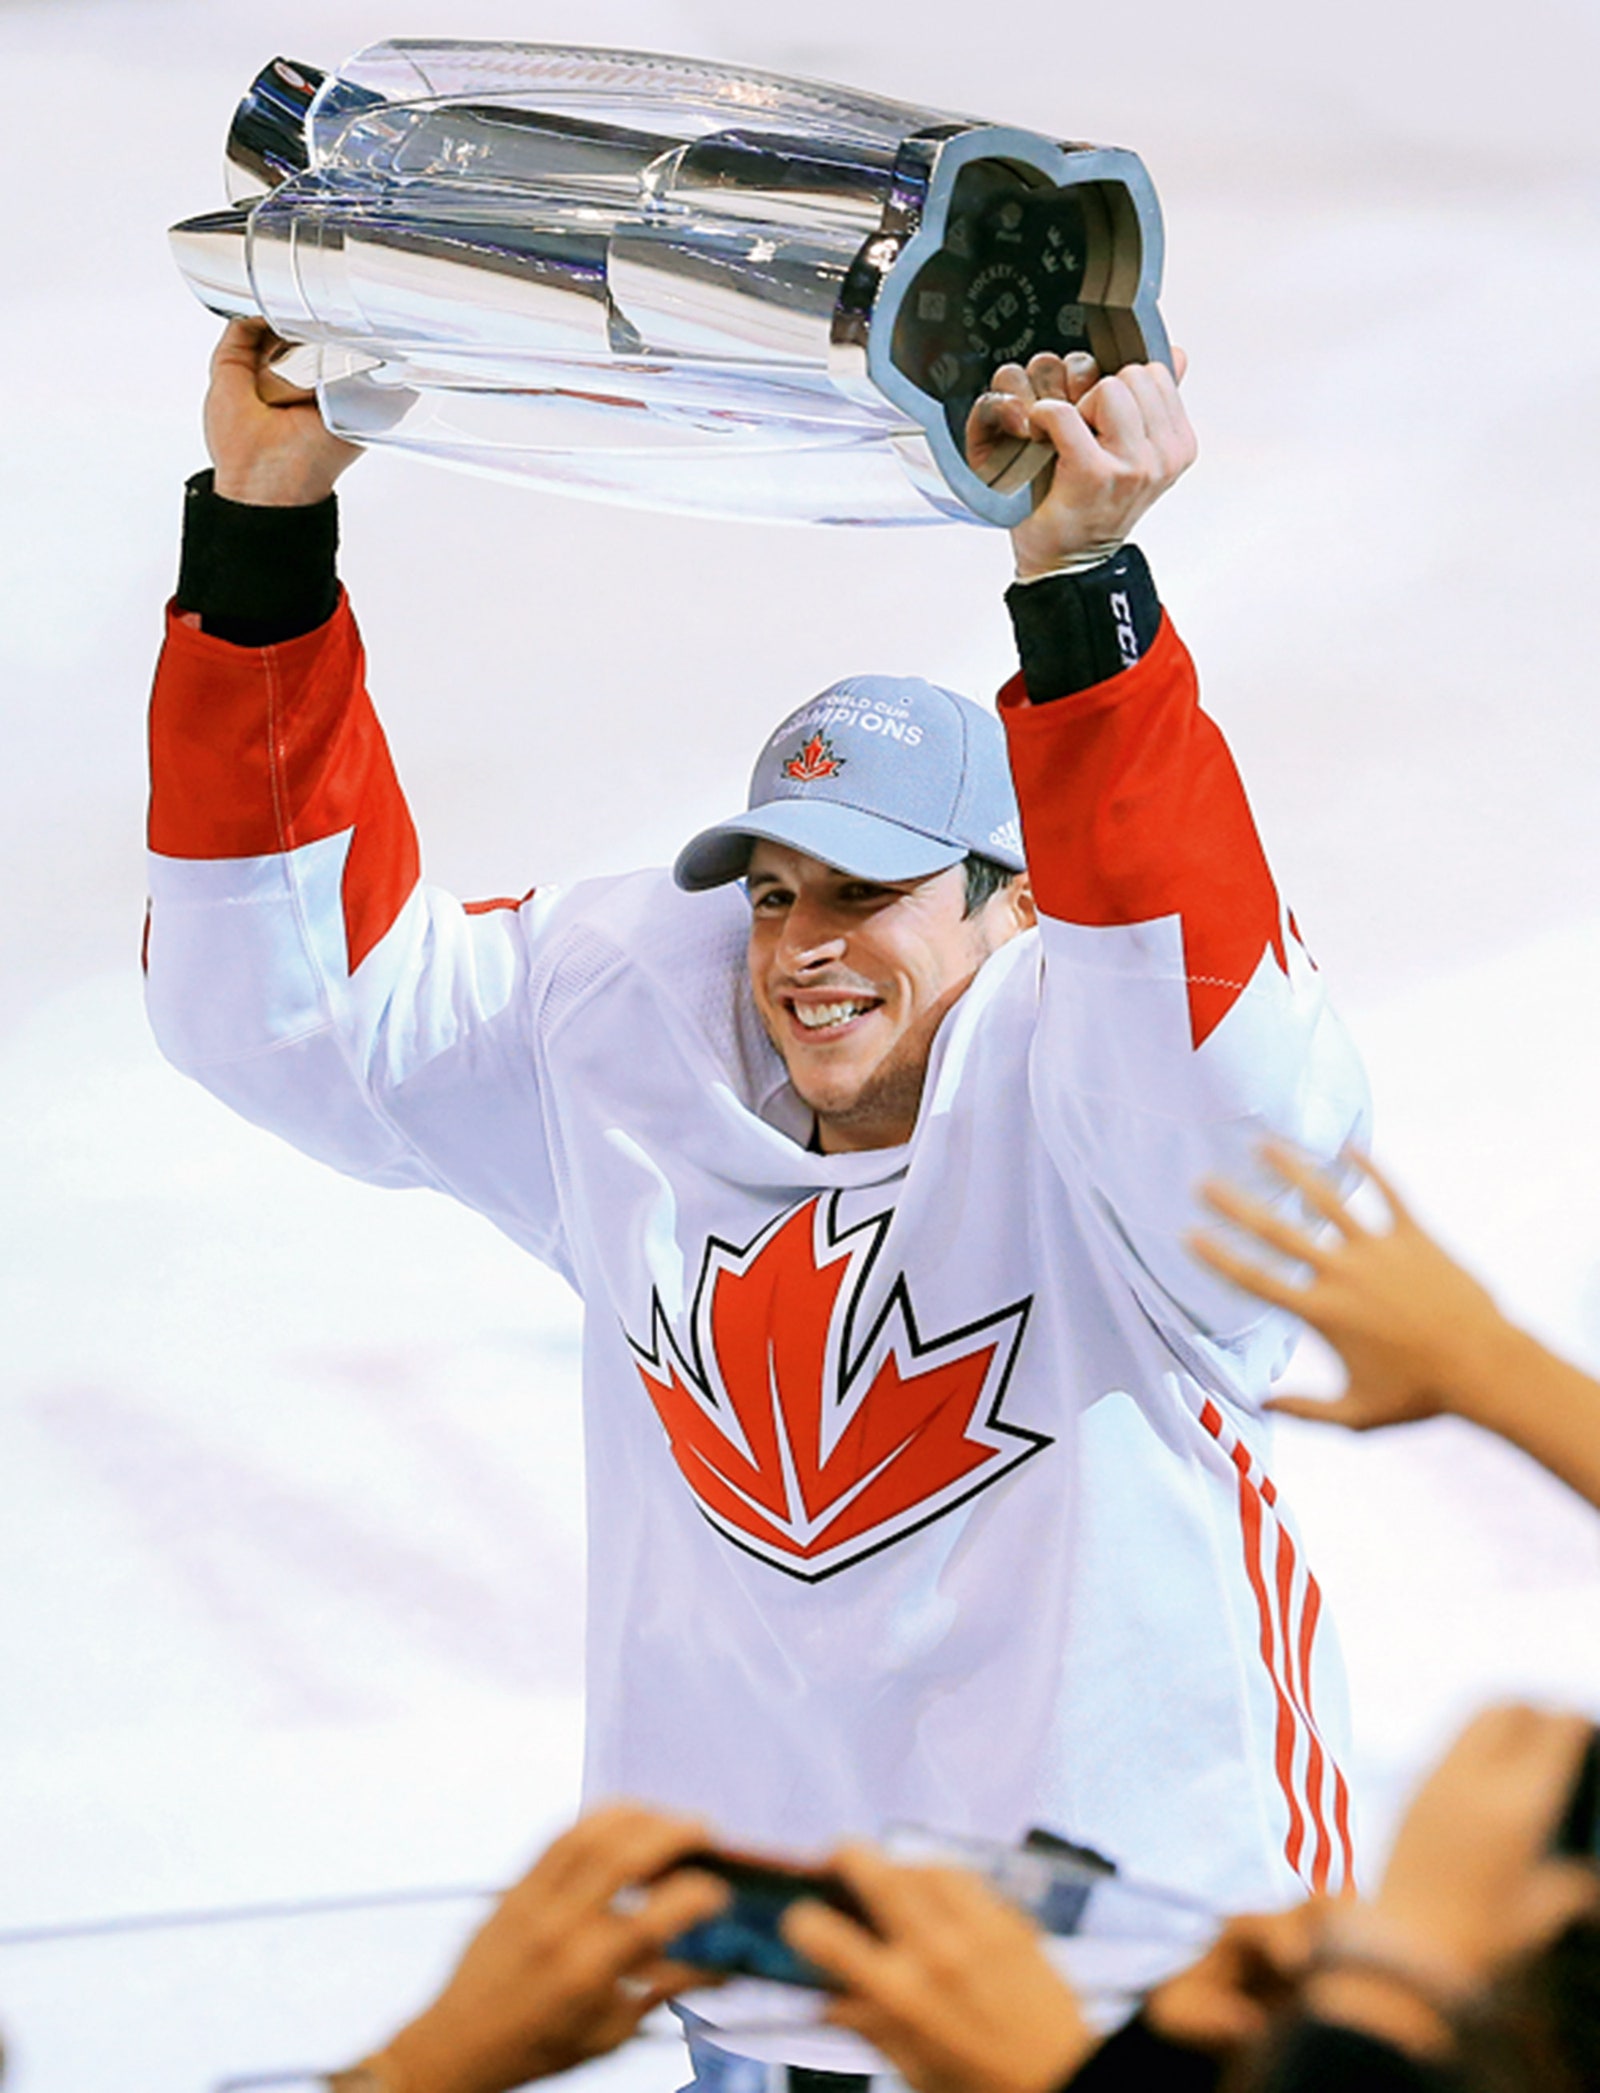 Кубок для чемпионата мира по хоккею выполнен по эскизам Гери и вручается с 2004 года. На фото хоккеист Сидни Кросби...